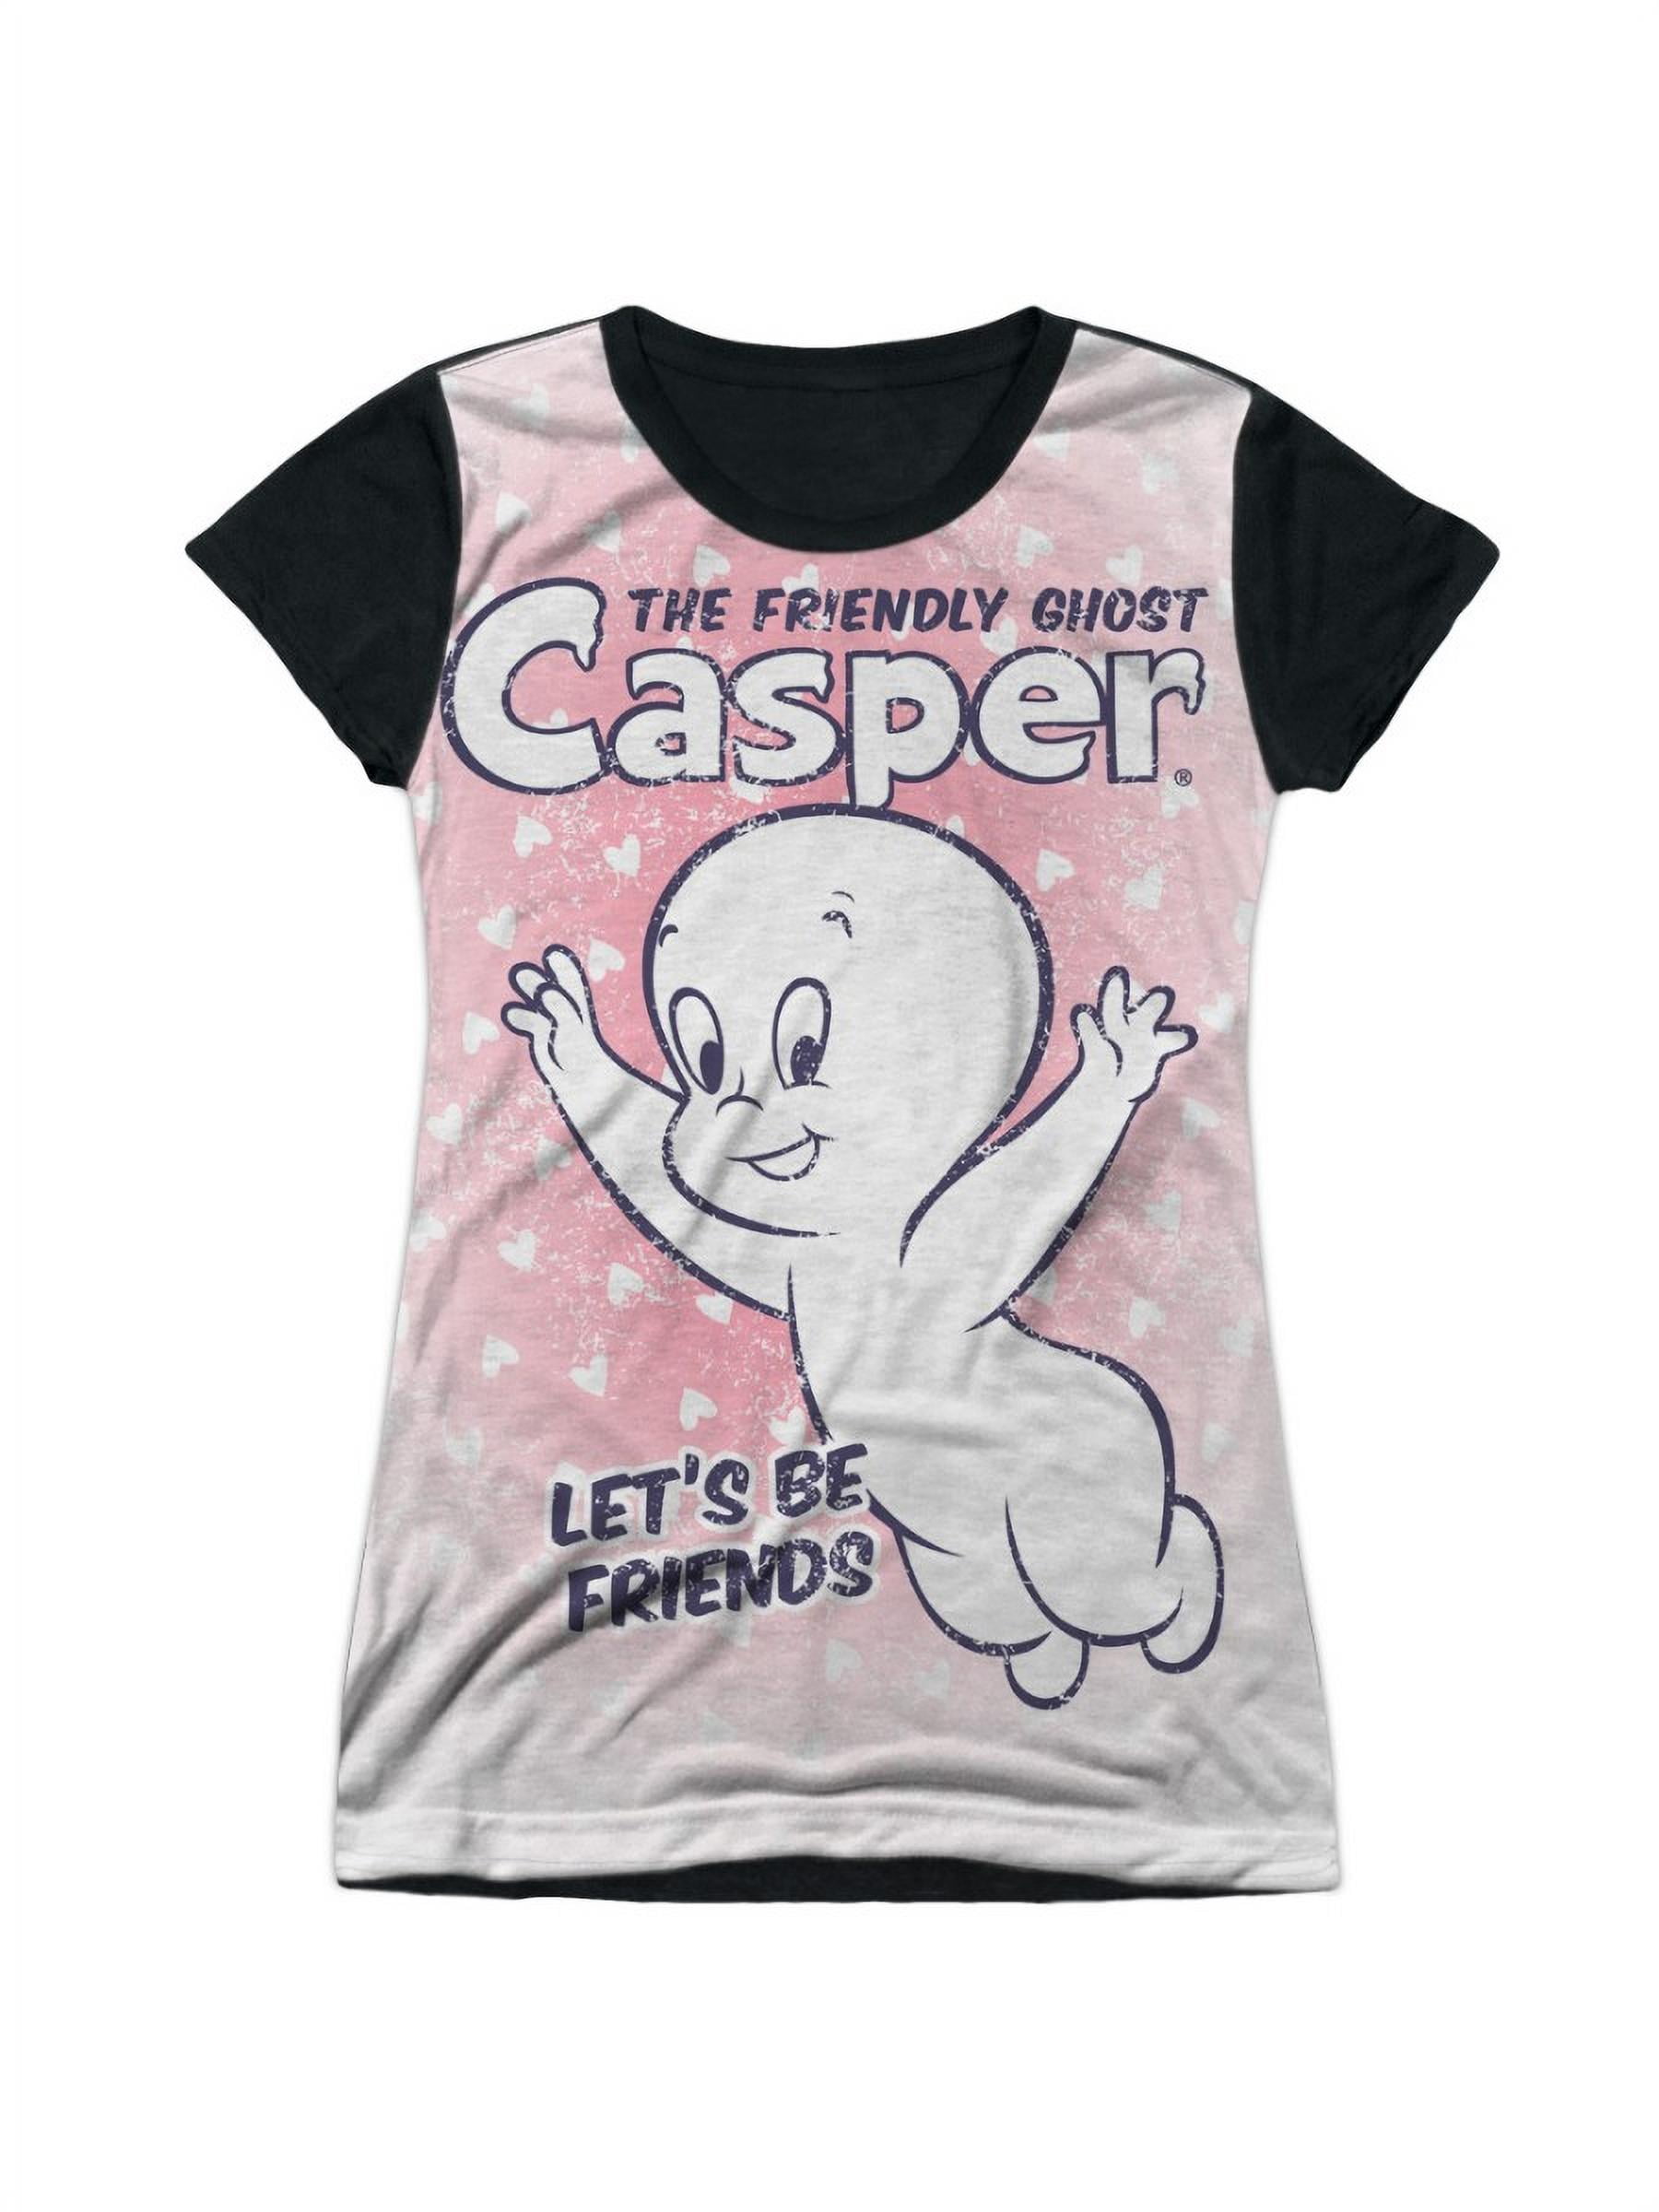 Casper The Friendly Ghost Cartoon TV Show Friends Juniors Black Back T-Shirt Tee